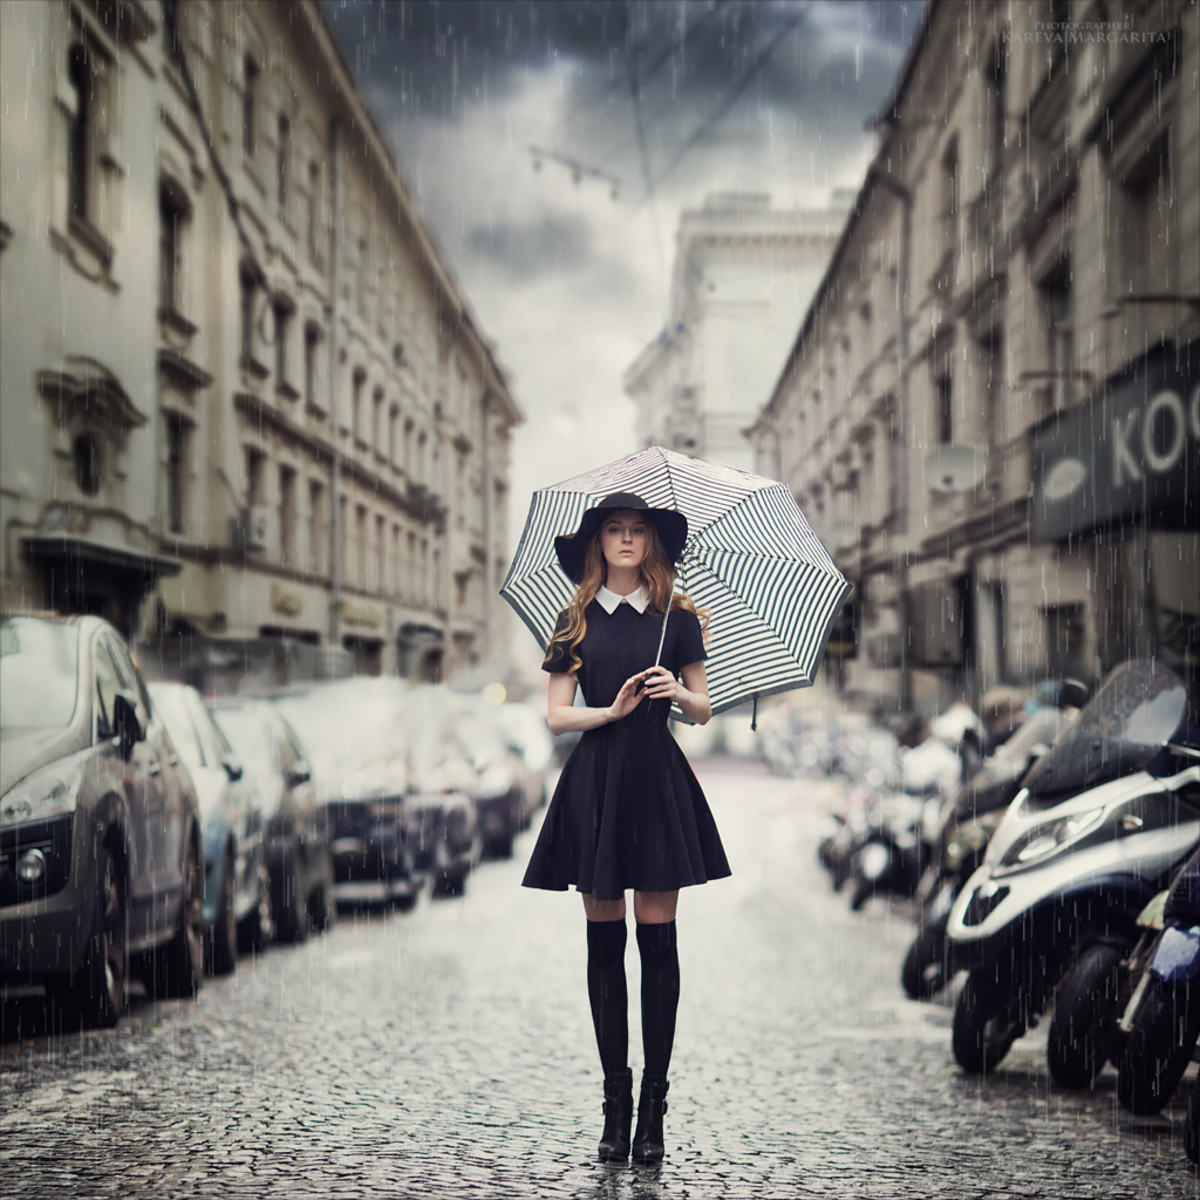 Фото Девушка в темном платье, в шляпе, с зонтом, стоит под дождем, на фоне городского переулка, by Margarita Kareva